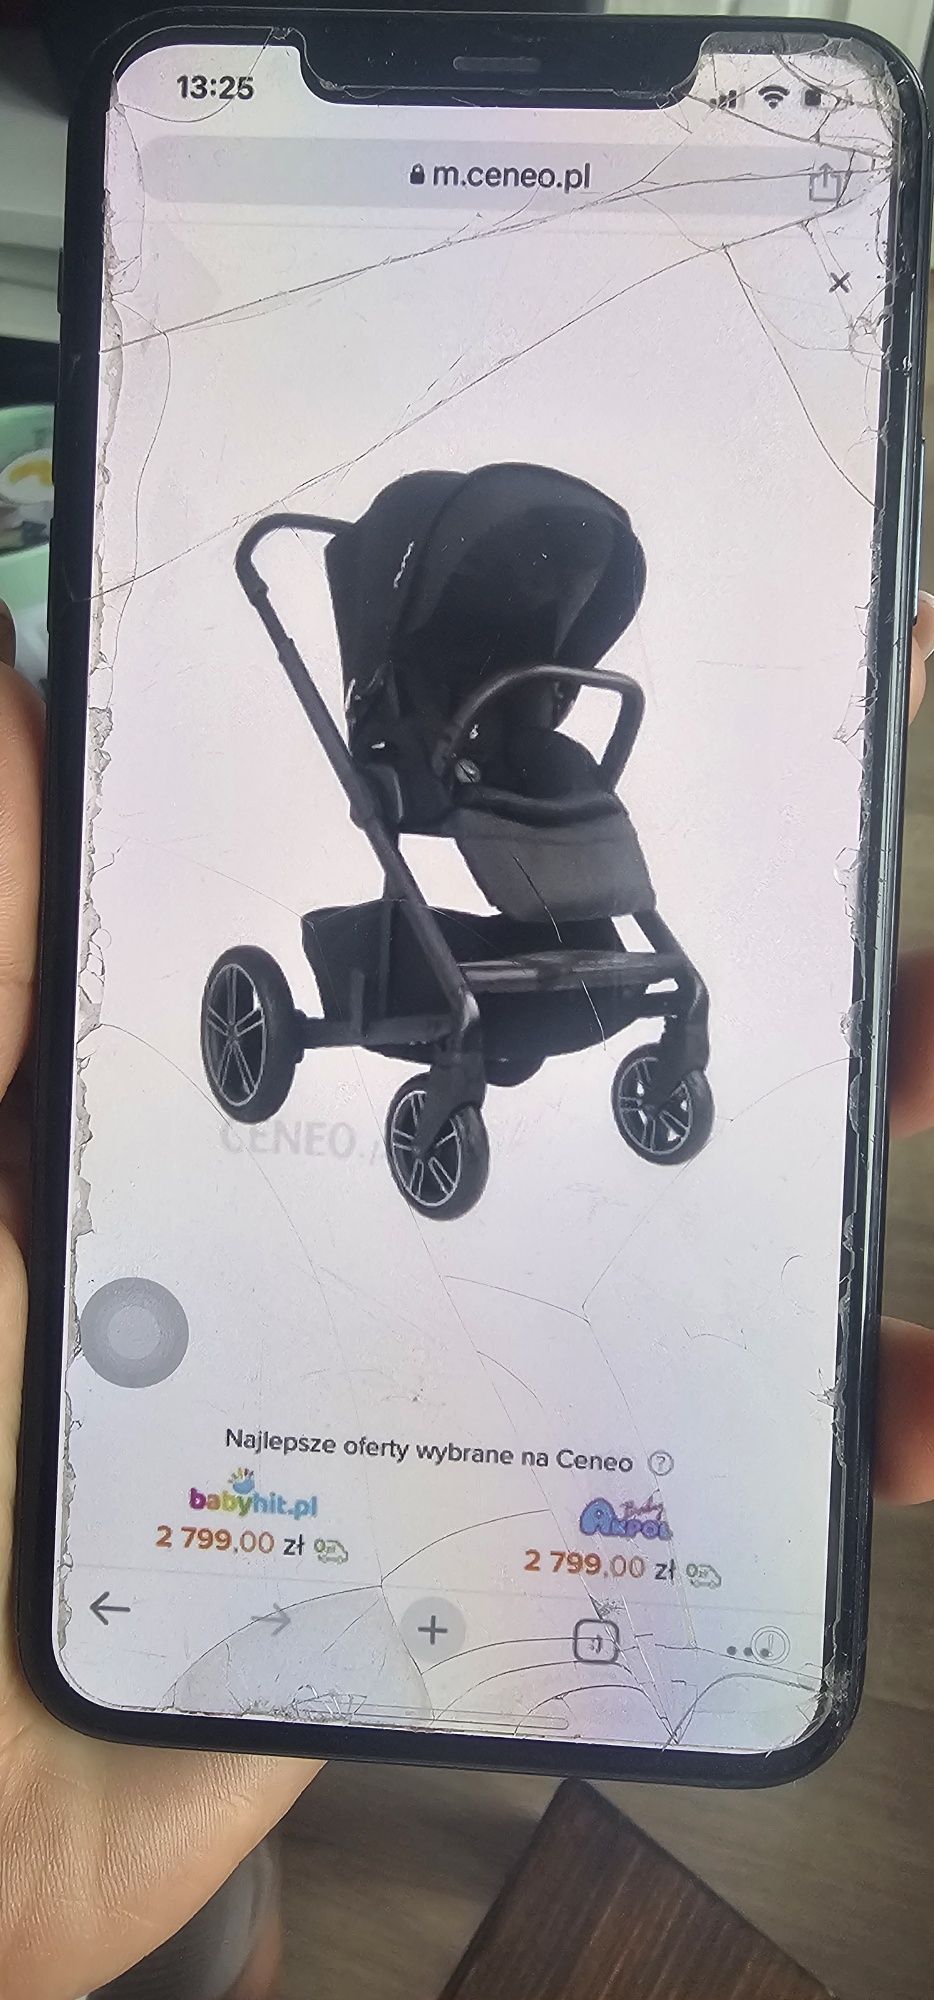 Wózek nuna 1 dziecko